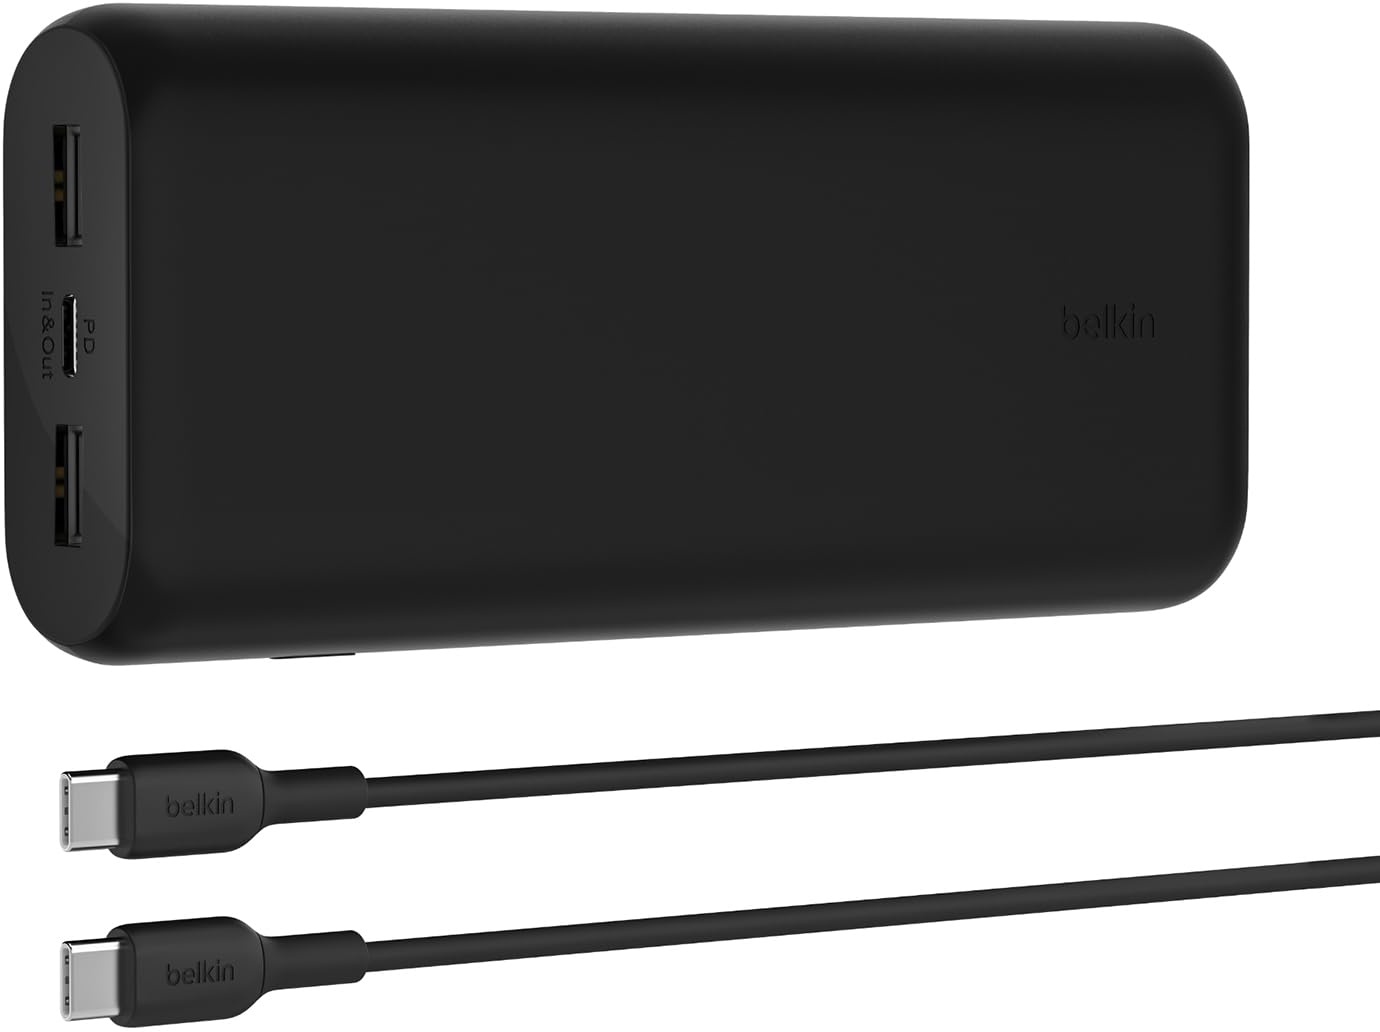 Belkin BoostCharge kompakte 3-Port-Powerbank 20000mAh mit PD, 20W, Externer Akku, Power Bank für iPhone 15, 14, 13, AirPods, Samsung Galaxy, Pixel usw, ideal für Reisen, mit 30-cm-USB-C/USB-C-Kabel